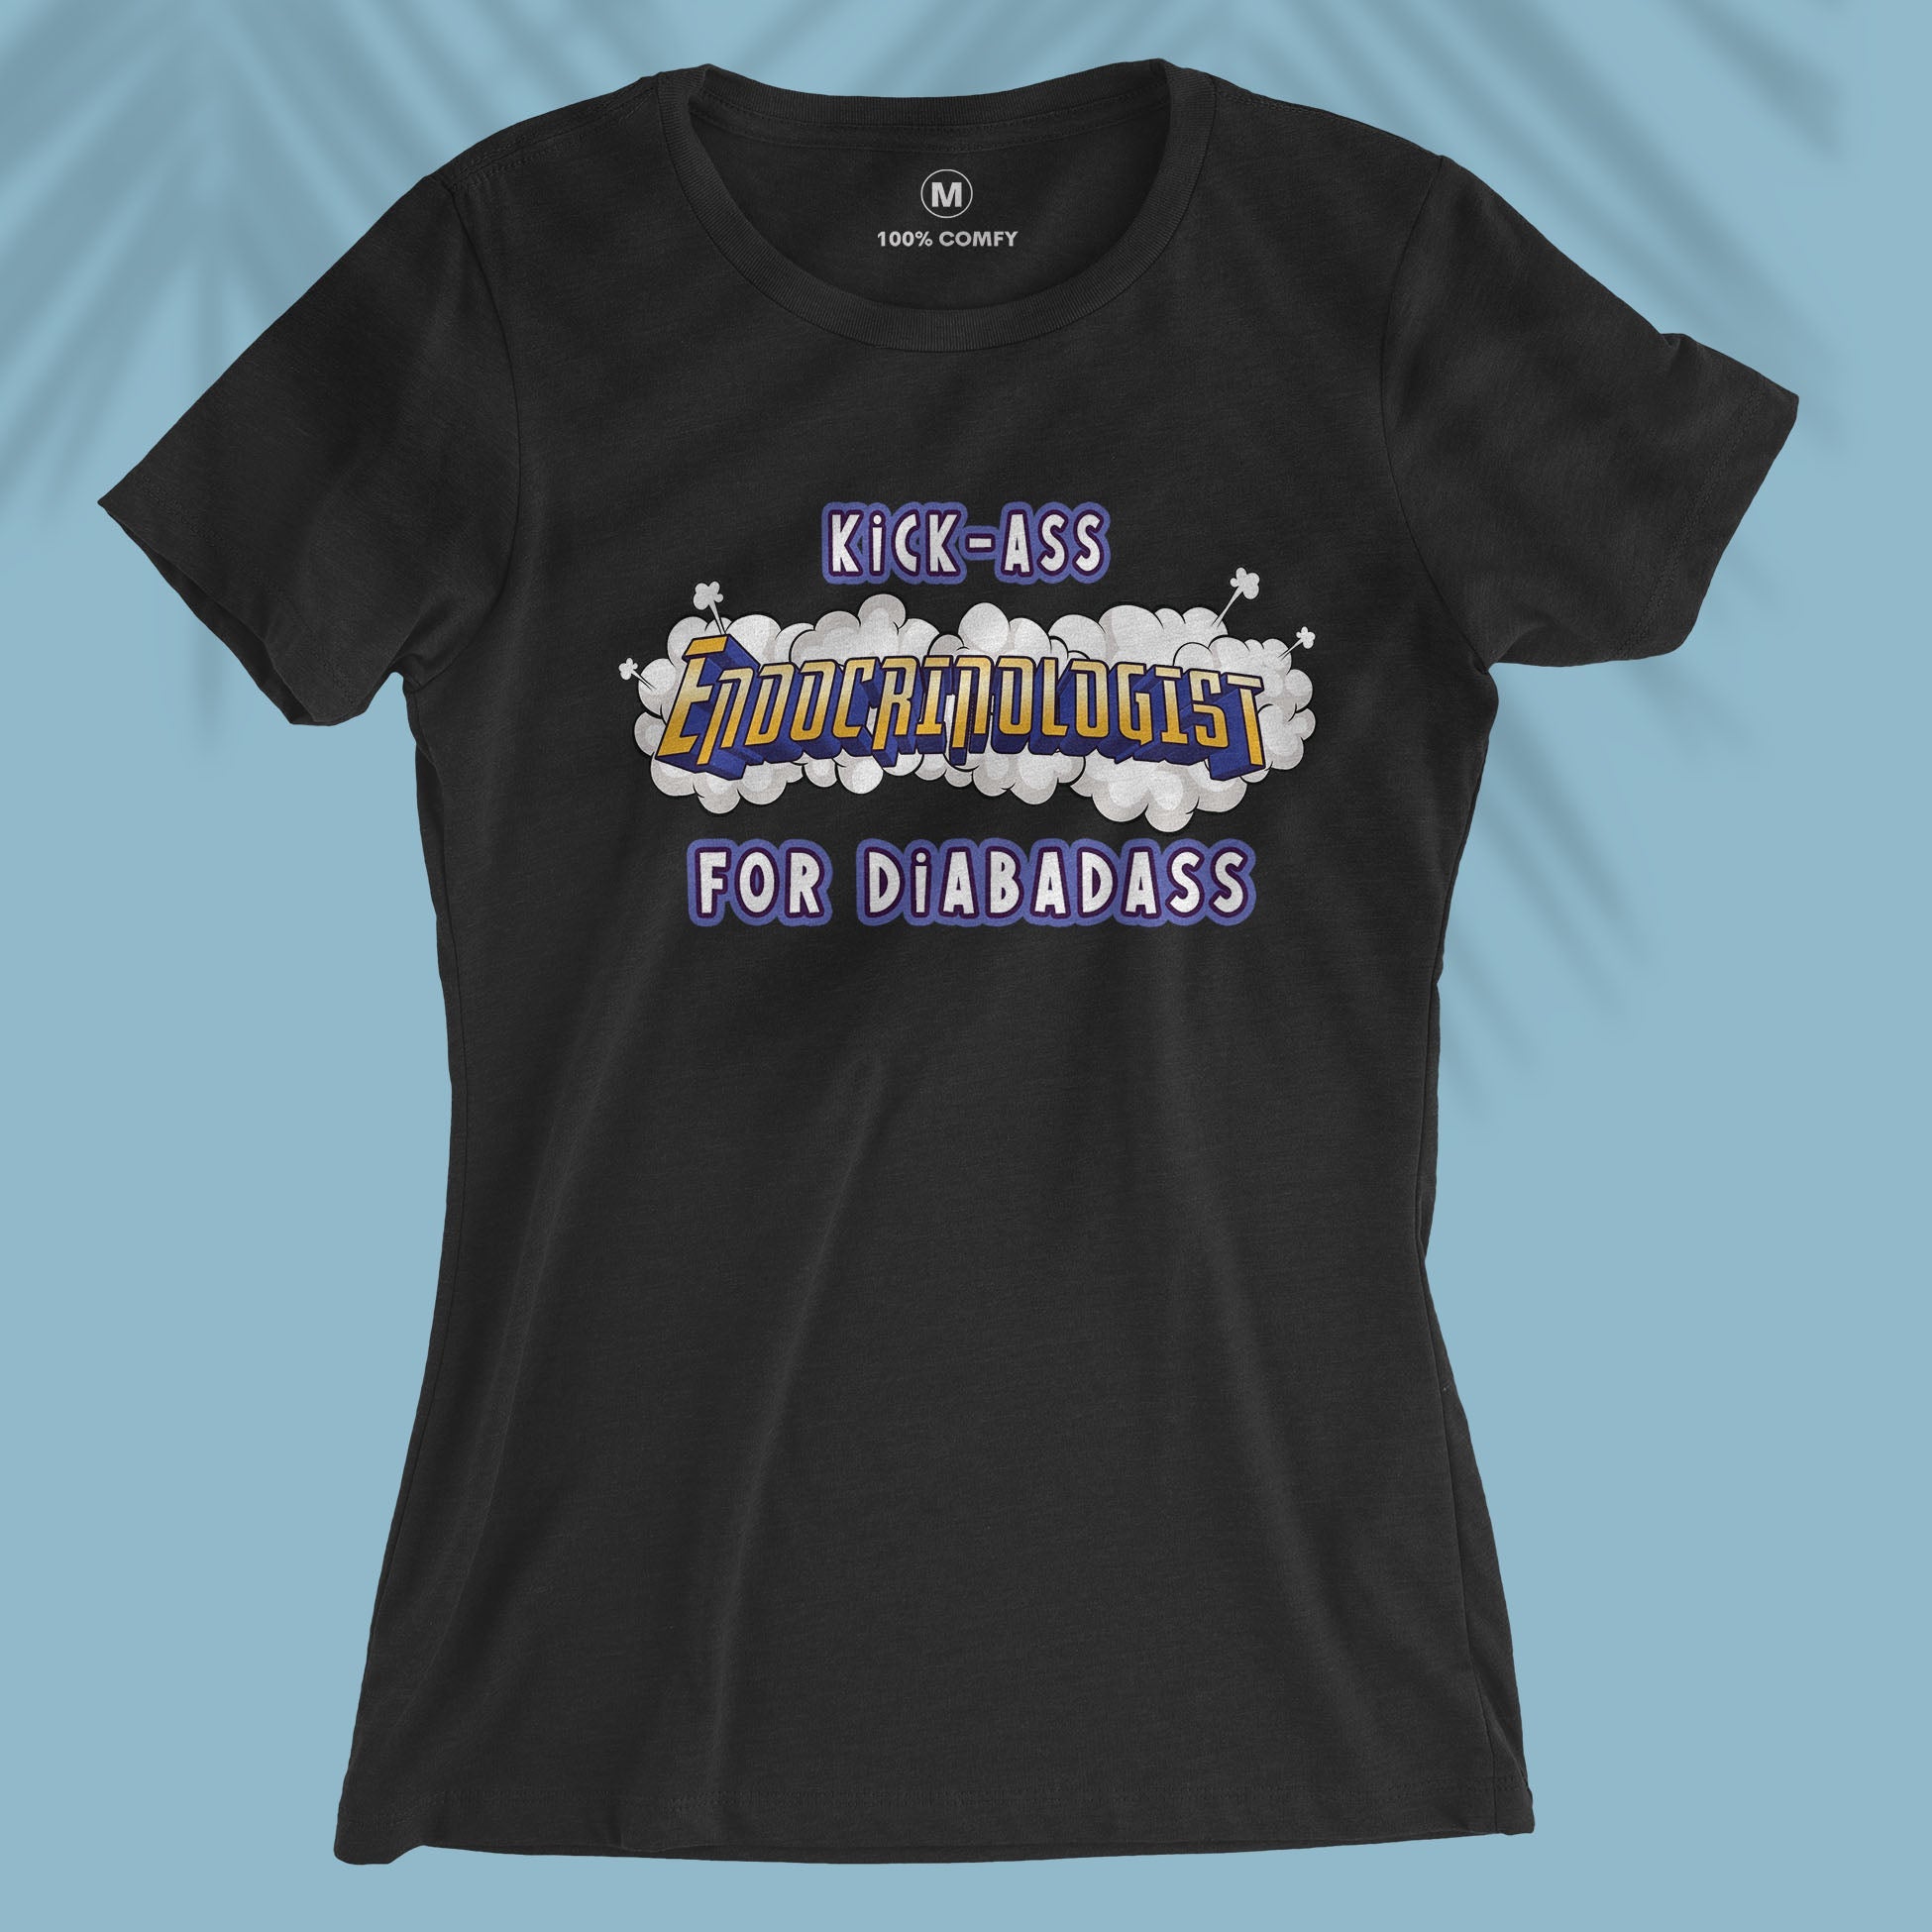 Kick-ass Diabetes Specialist - Women T-shirt